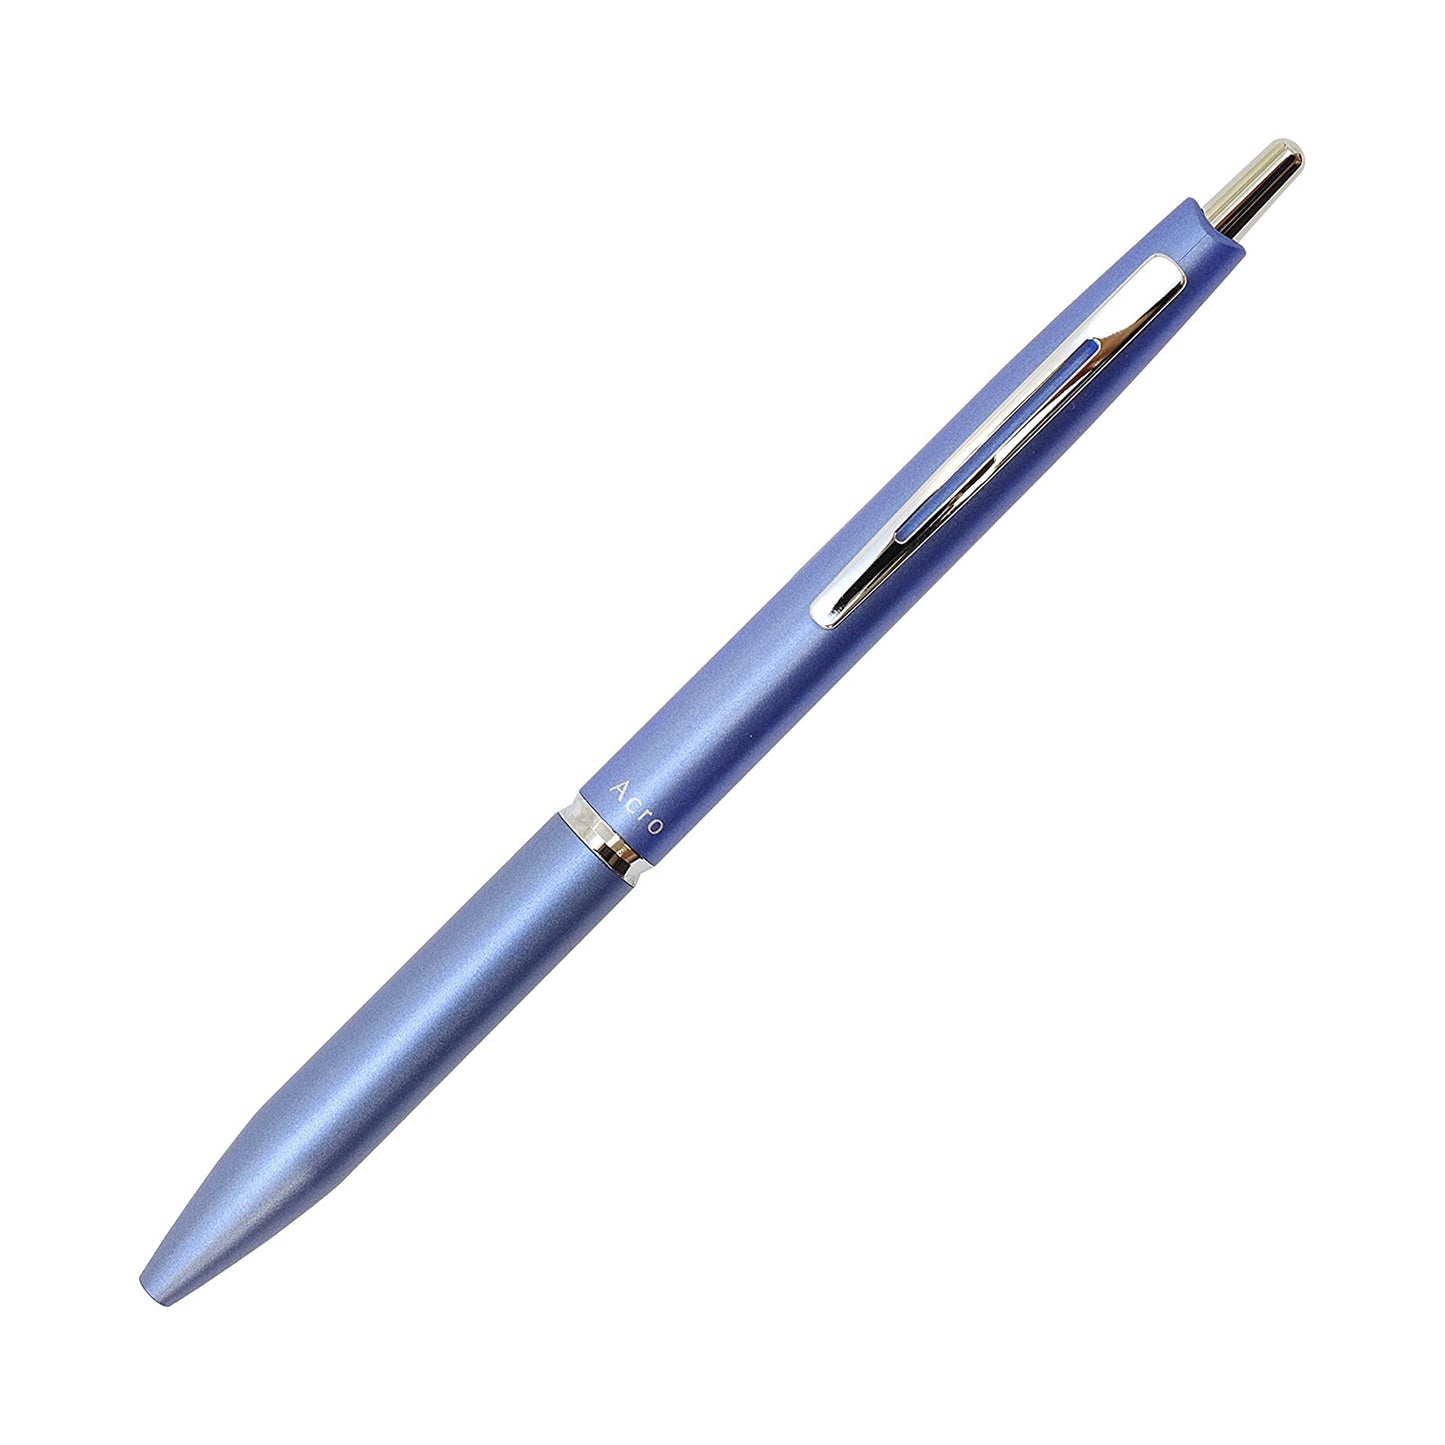 Acro 1000 Oil-Based Ballpoint Pen / Pilot